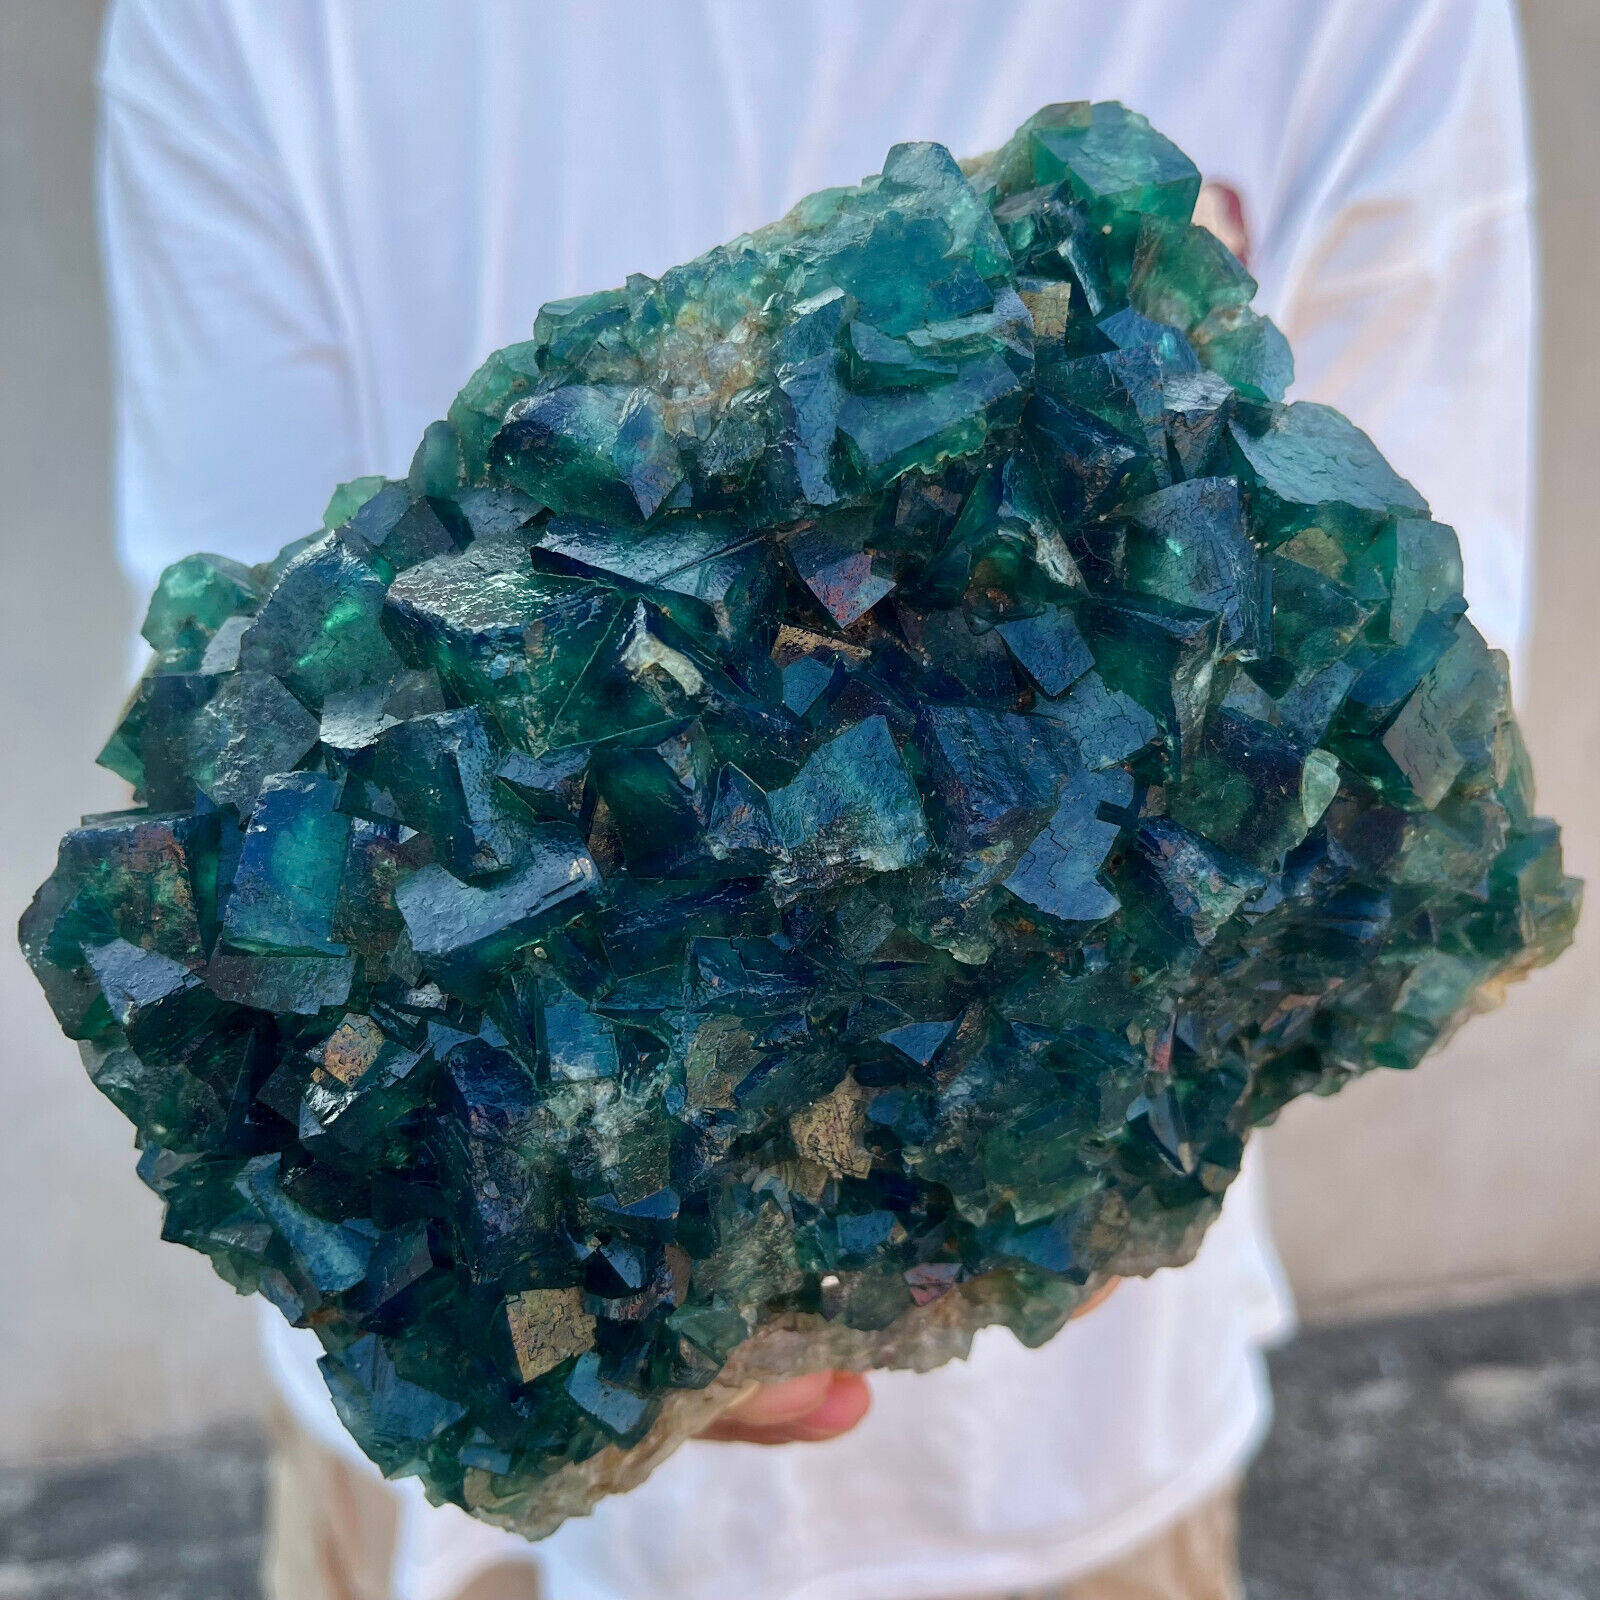 9.4lb Large NATURAL Green Cube FLUORITE Quartz Crystal Cluster Mineral Specimen